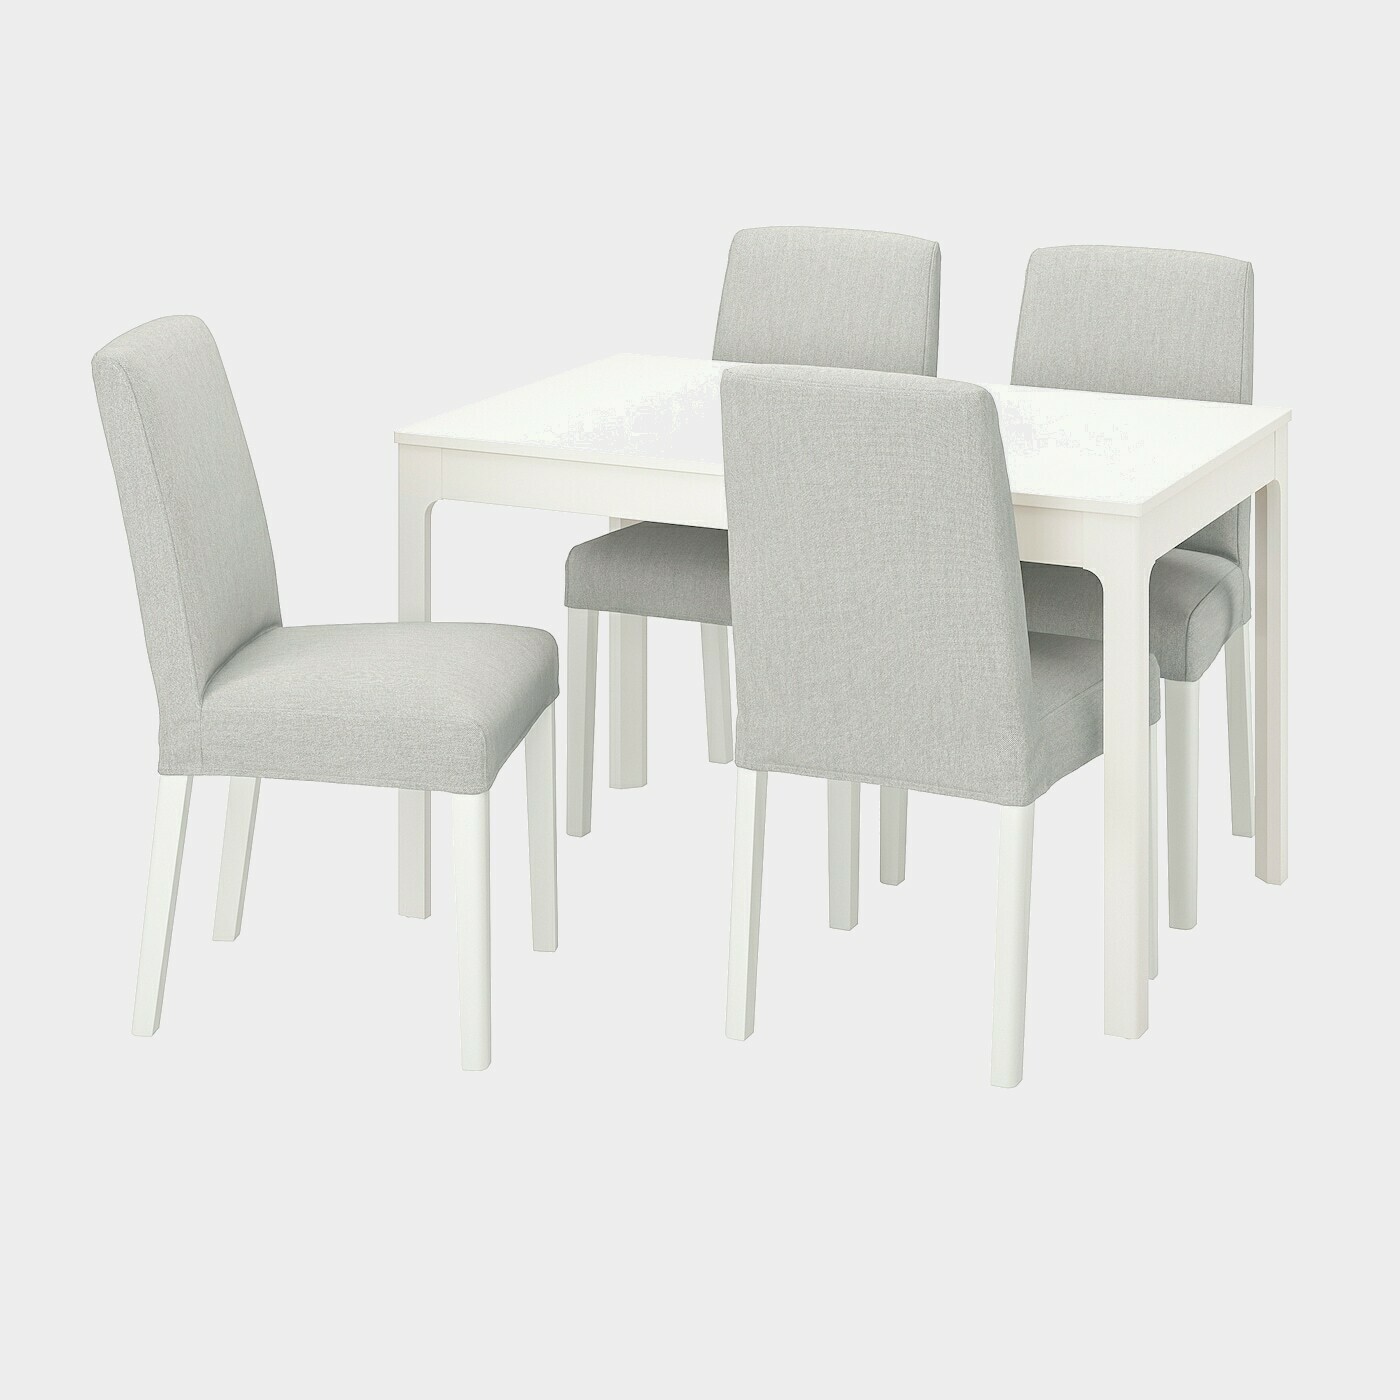 EKEDALEN / BERGMUND Tisch und 4 Stühle  -  - Möbel Ideen für dein Zuhause von Home Trends. Möbel Trends von Social Media Influencer für dein Skandi Zuhause.